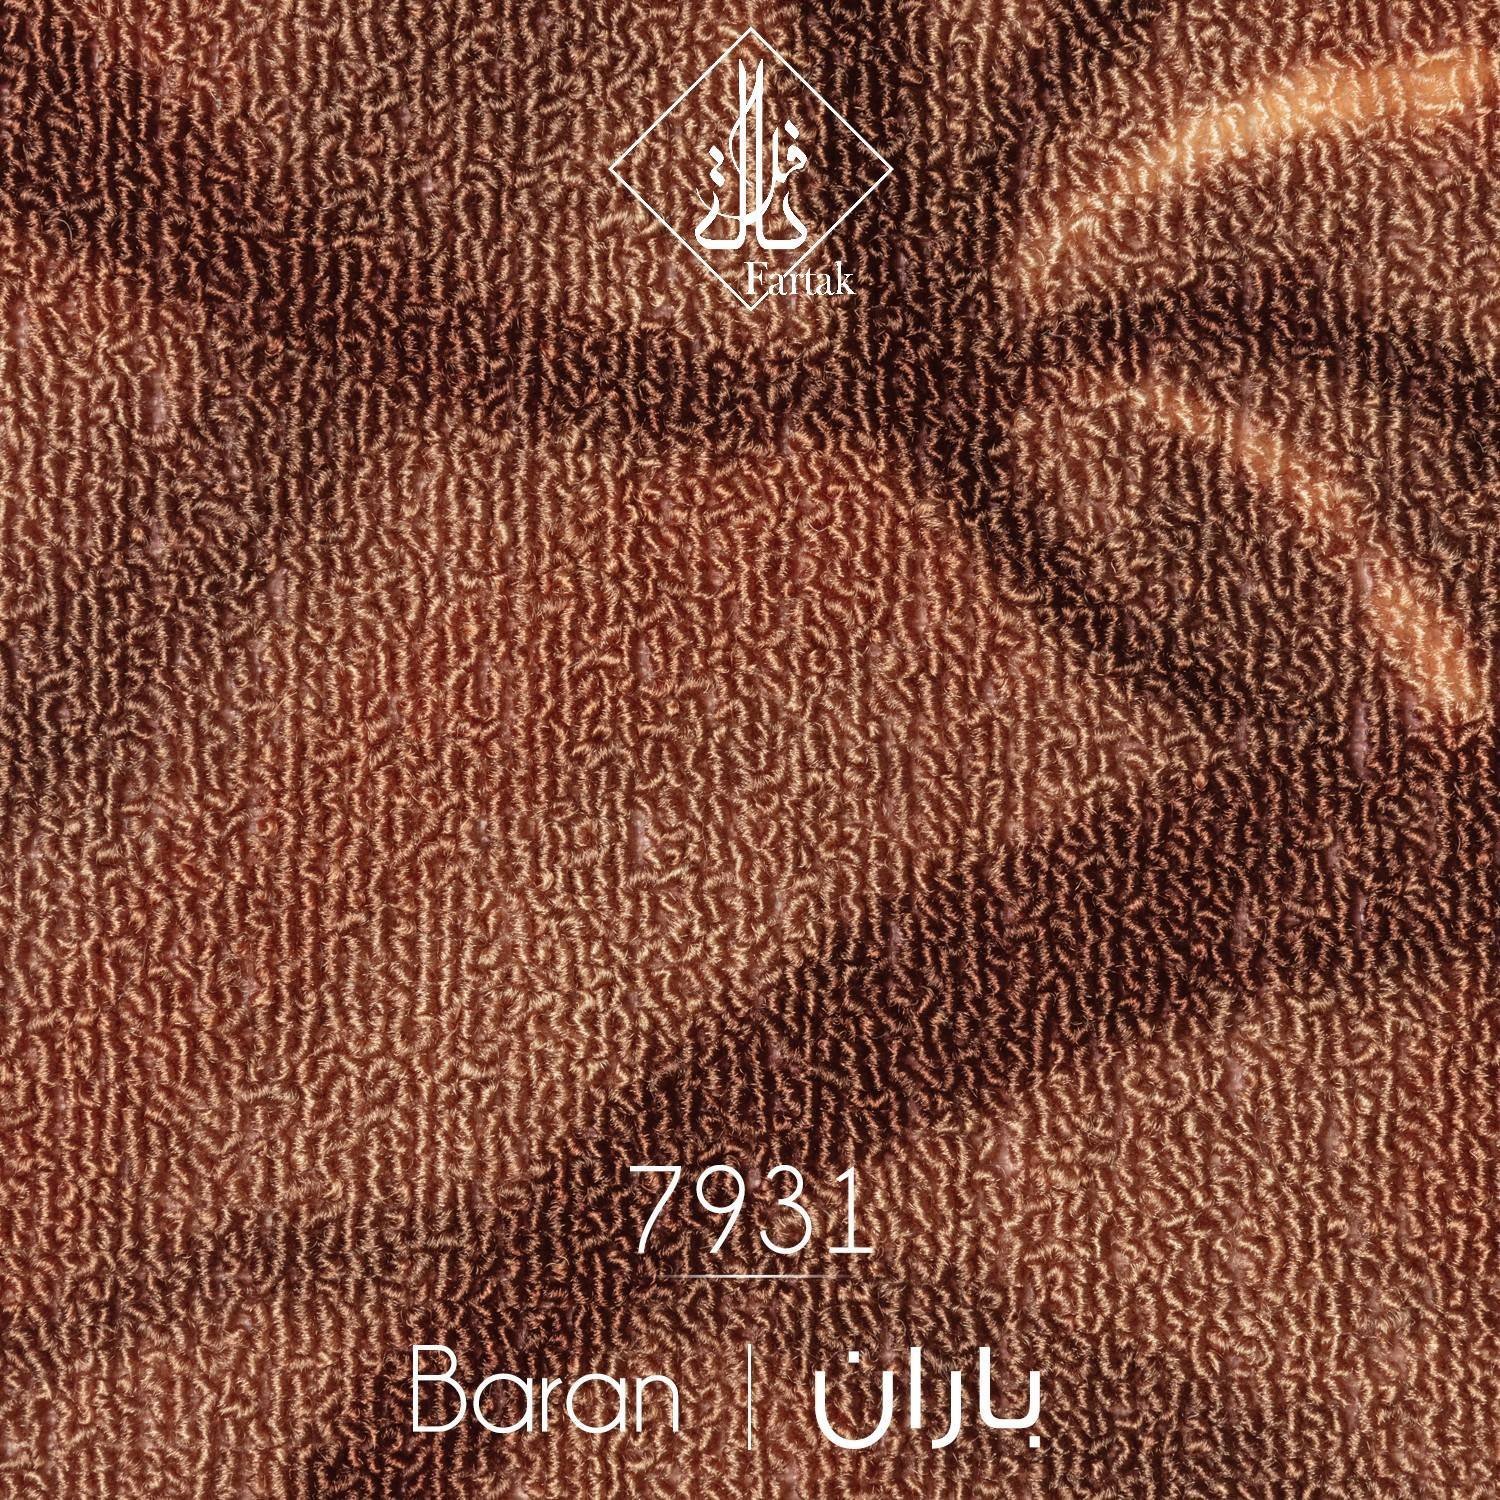 موکت ظریف مصور طرح باران کد ۷۹31